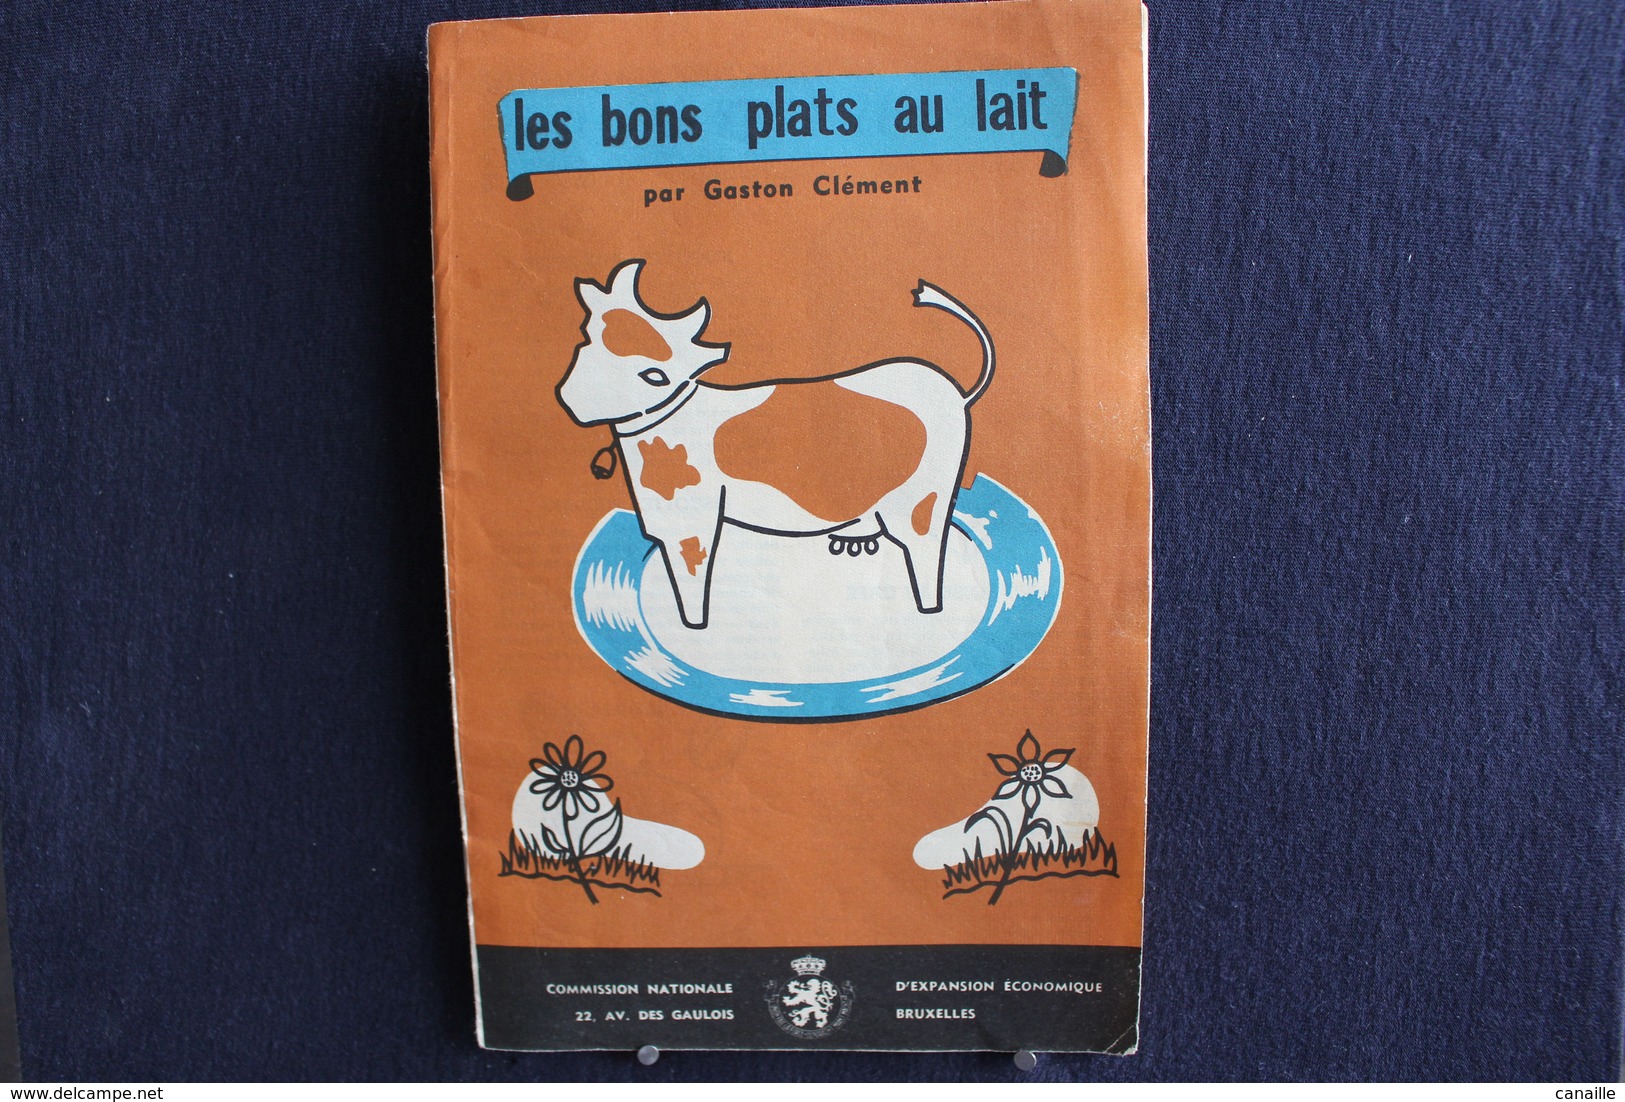 Publicités ( 4 )  - Livret De Cuisine - Par Gaston Clément - Les Bons Plats Au Lait -  Forma 13x20 Cm 8 Page - Cooking & Wines